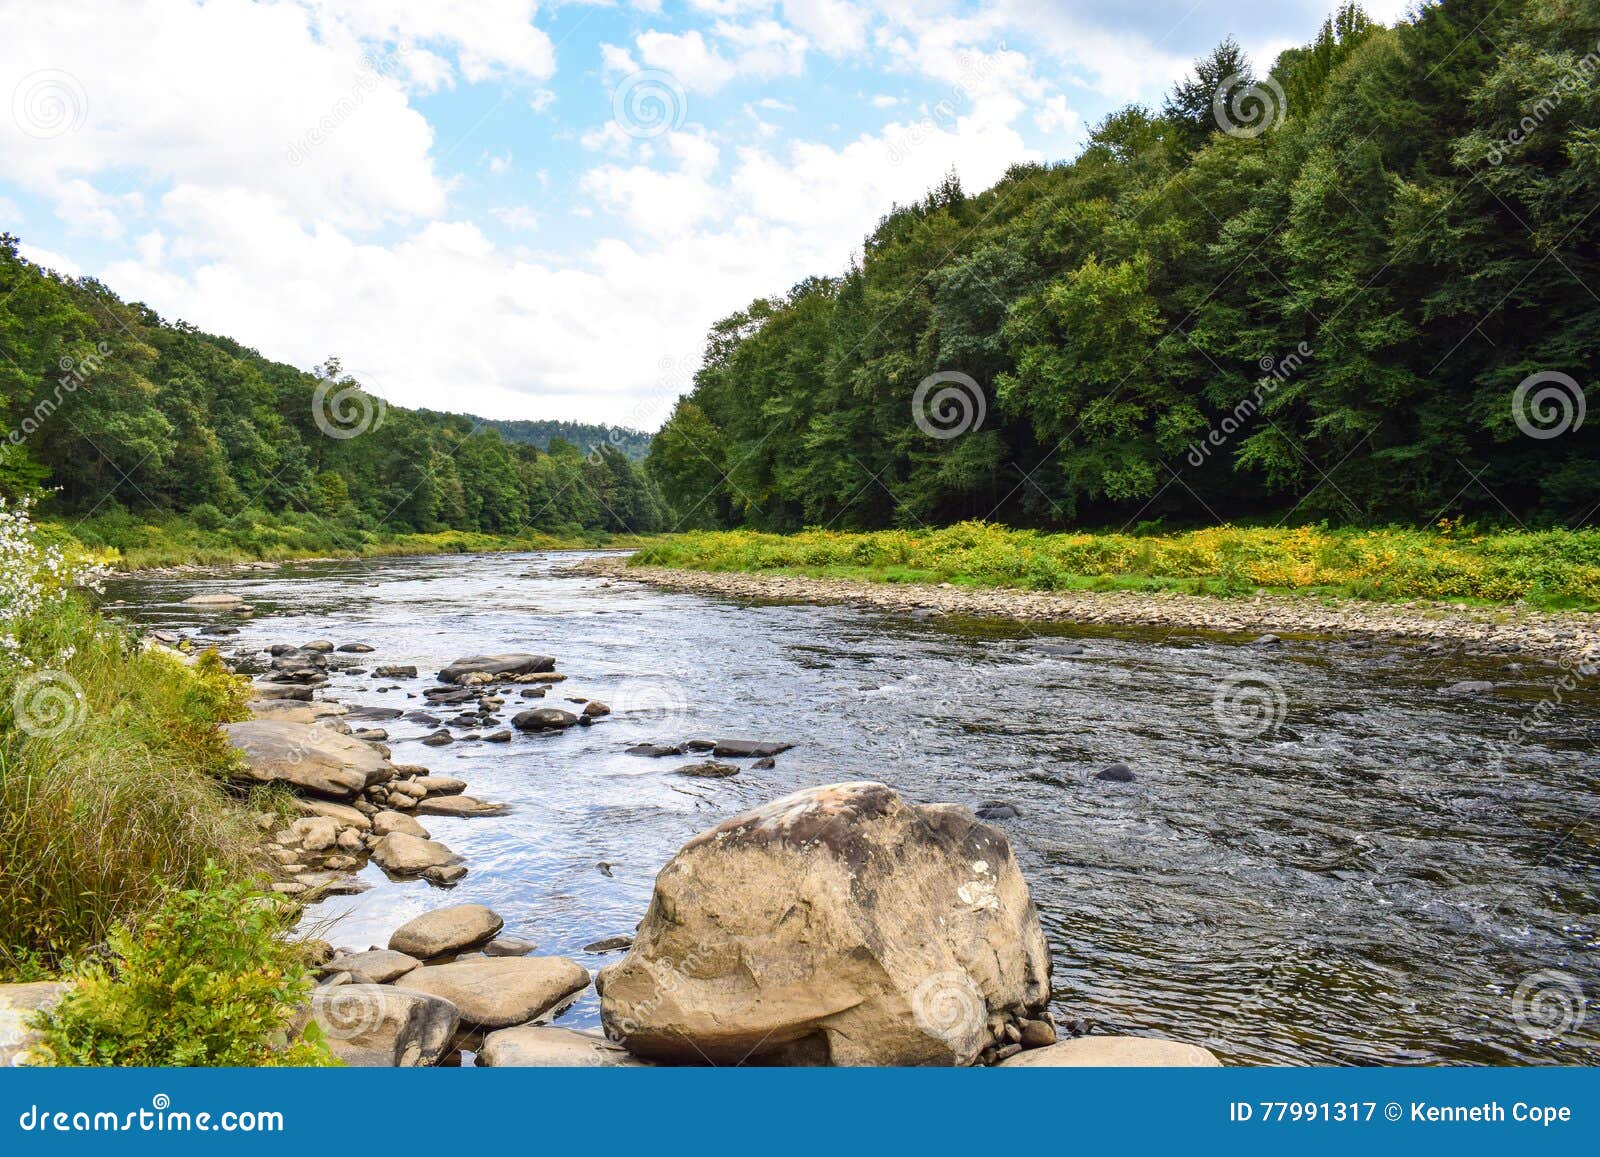 a small river in pennsylvania.